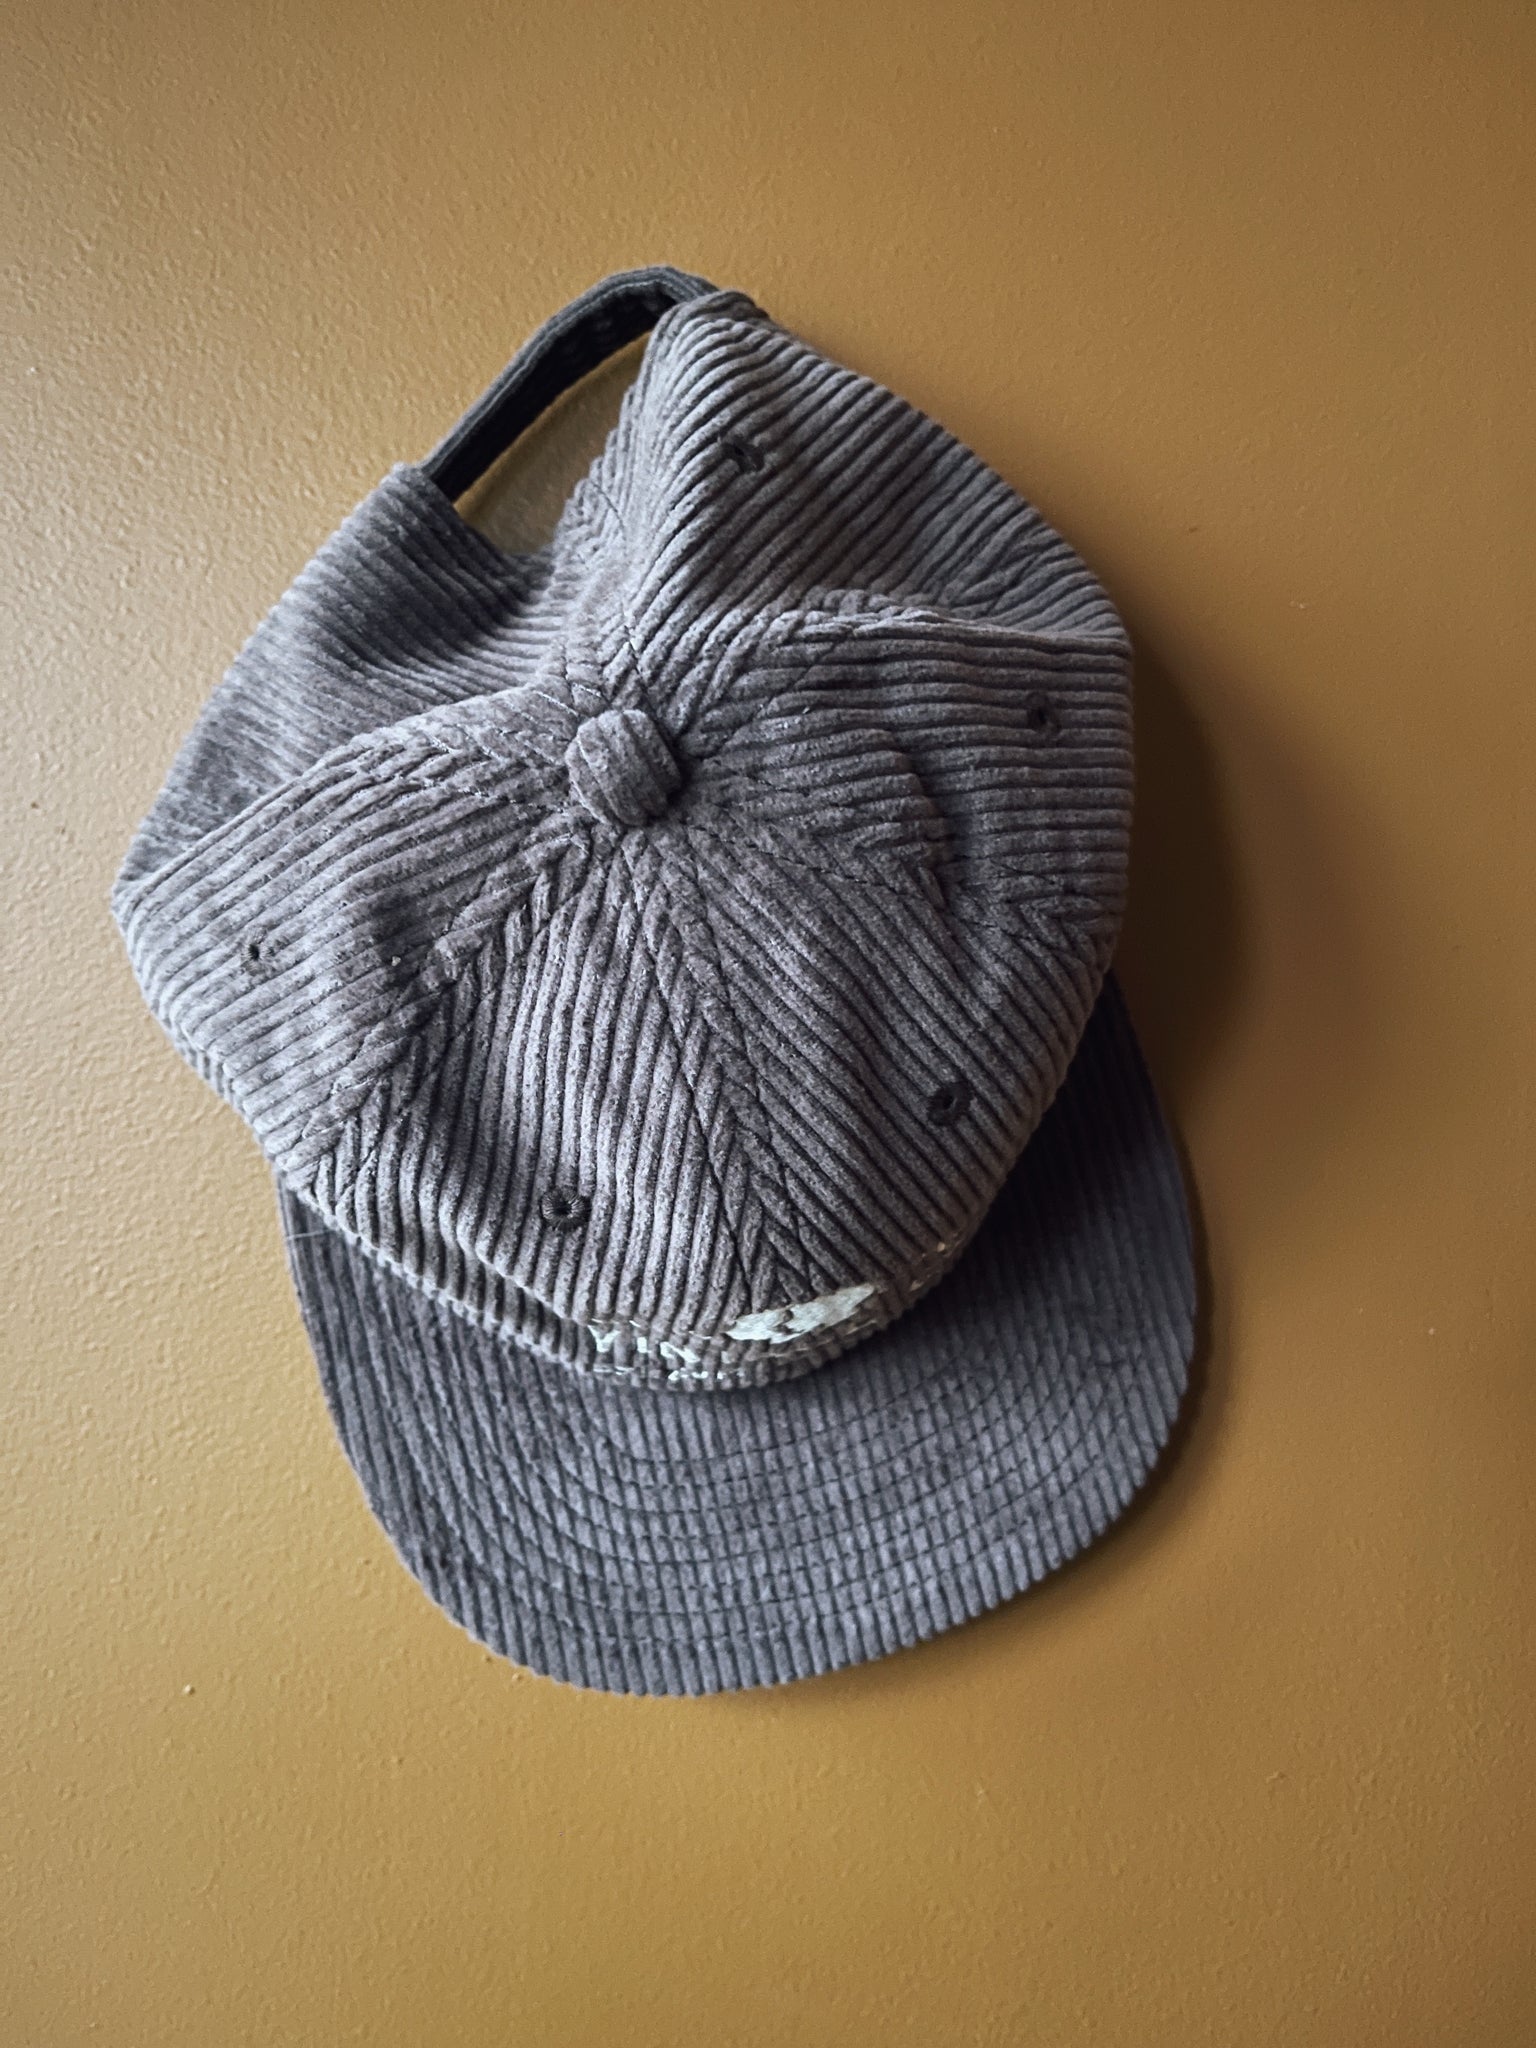 Limited Edition BLK MKT Vintage Dad Hat (Taupe)